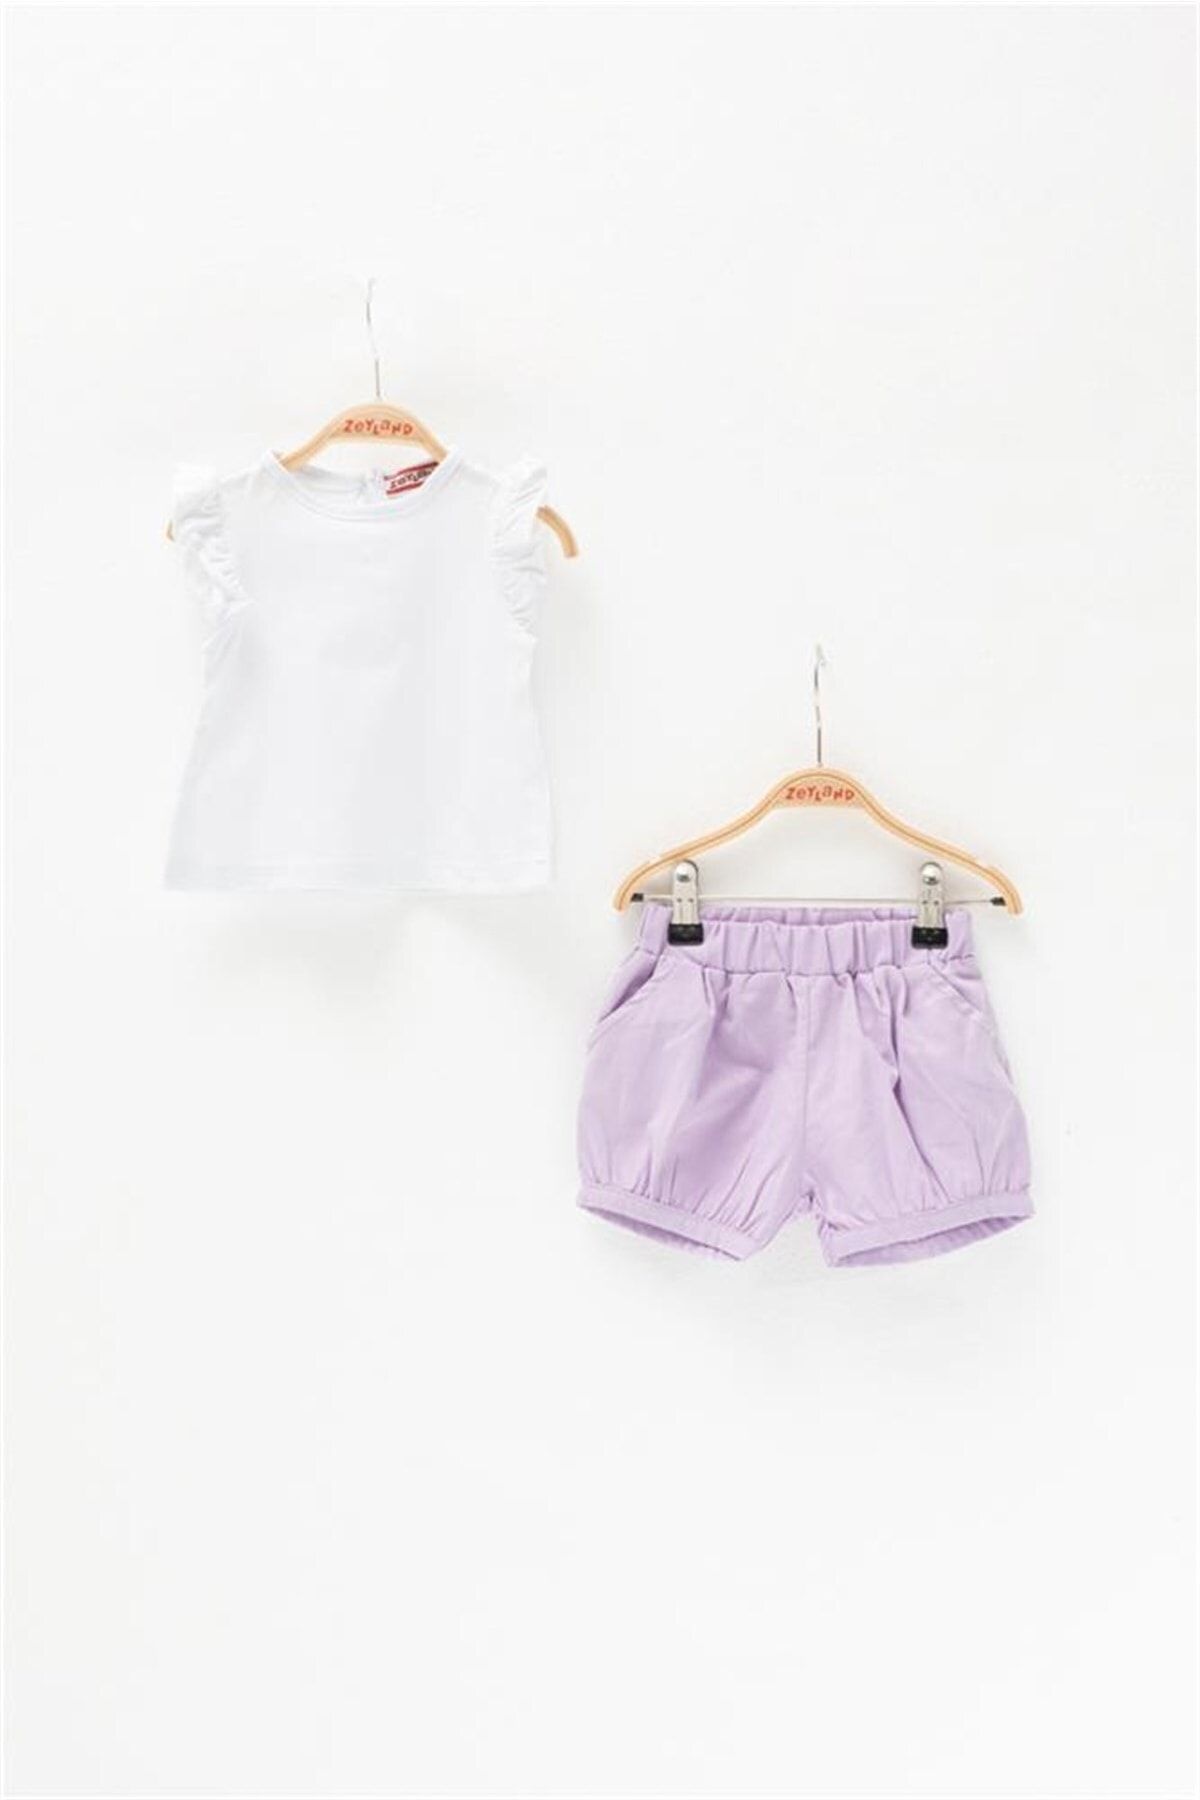 Zeyland Kız Bebek Kolları Fırfırlı T-shirt Ve Cepli Şort Takım (3-36AY)